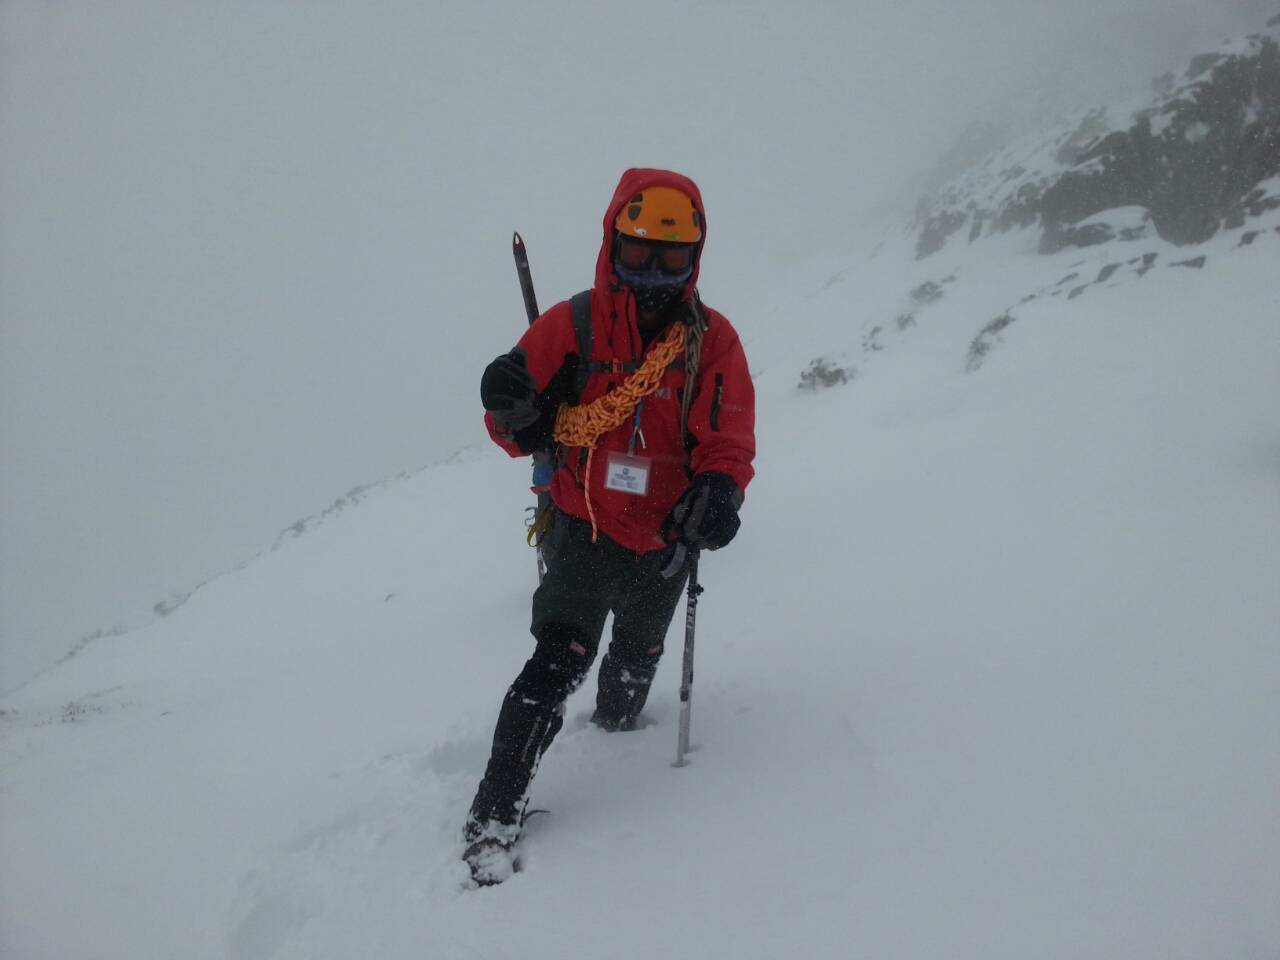 雪地行走須熟悉雪攀裝備使用與步法之正確性(雪霸志工顏文男提供)。